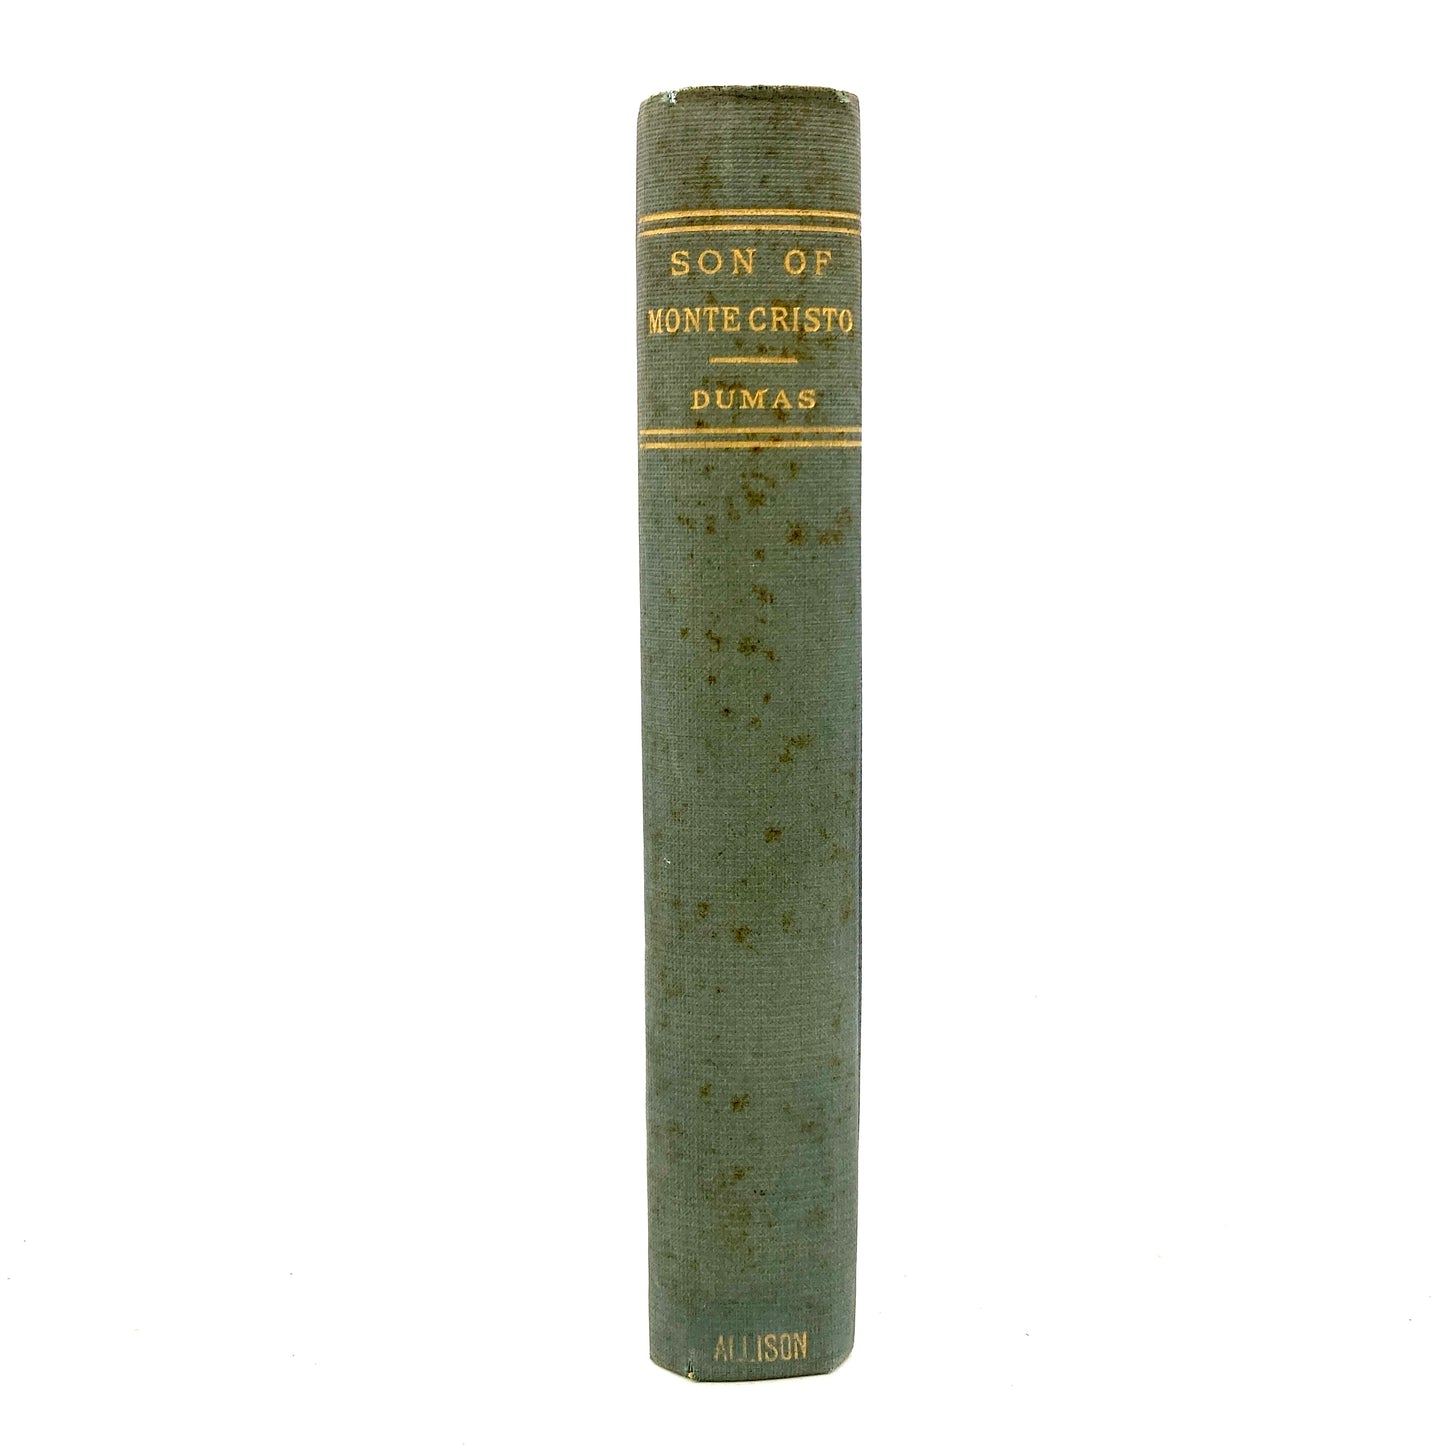 DUMAS, Alexandre "The Son of Monte Cristo" [Wm. L. Allison, 1884] - Buzz Bookstore